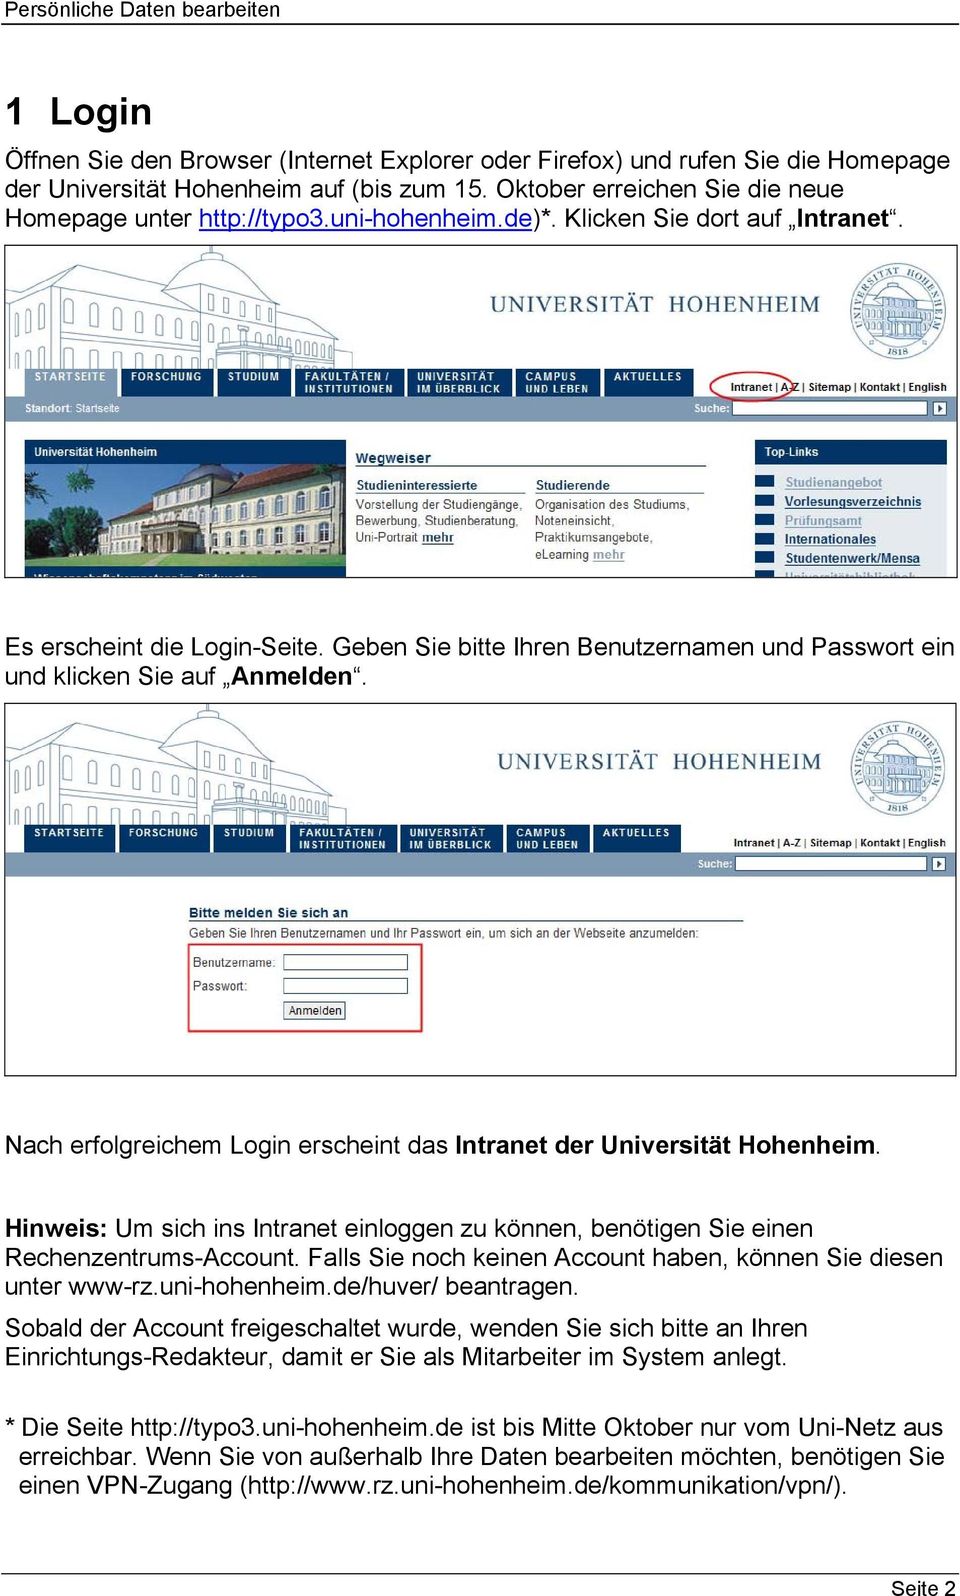 Nach erfolgreichem Login erscheint das Intranet der Universität Hohenheim. Hinweis: Um sich ins Intranet einloggen zu können, benötigen Sie einen Rechenzentrums-Account.